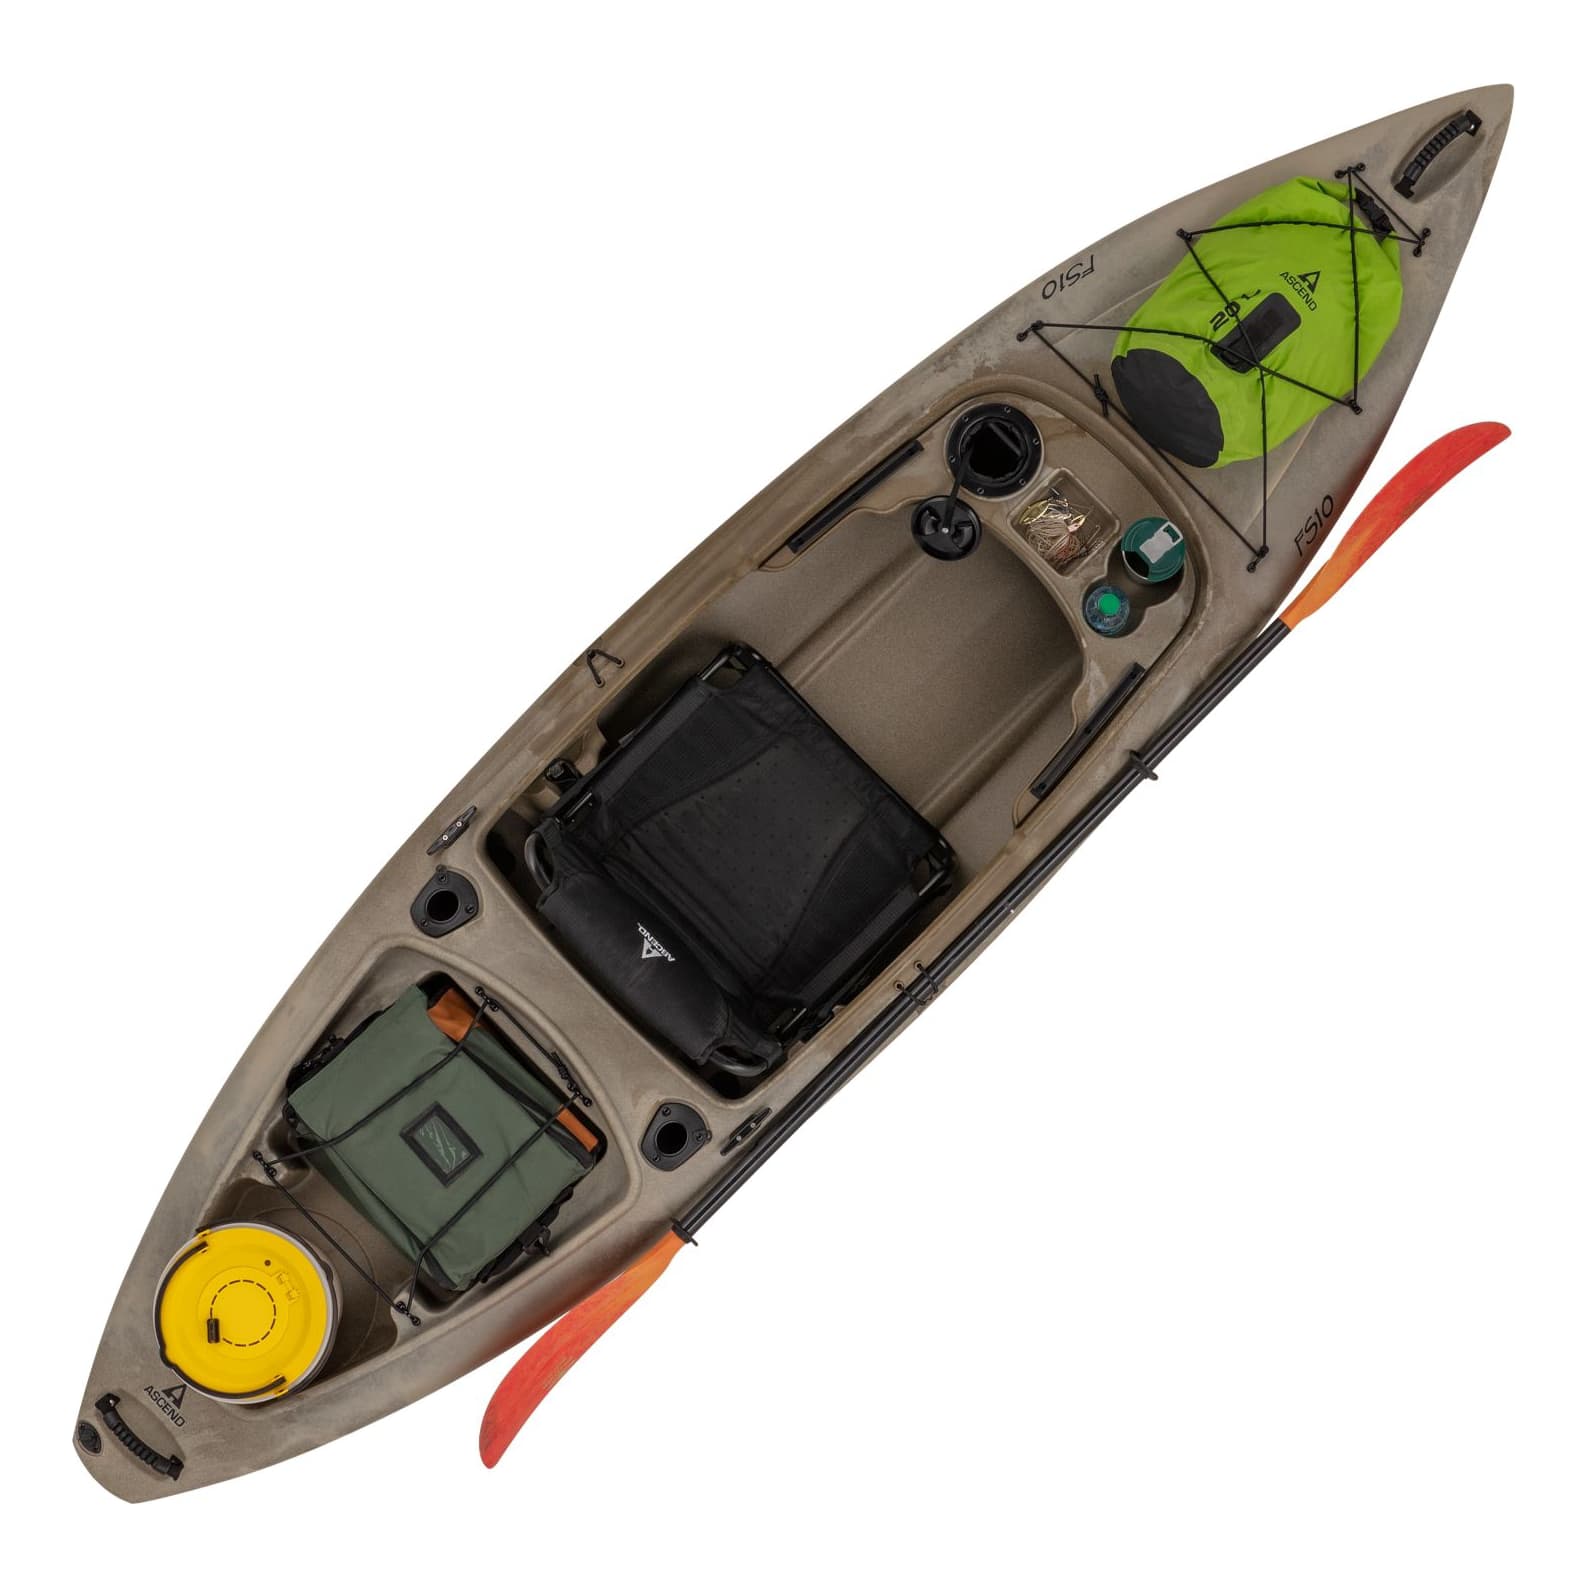 ASCEND® FS10 Sit-In Angler Kayak 